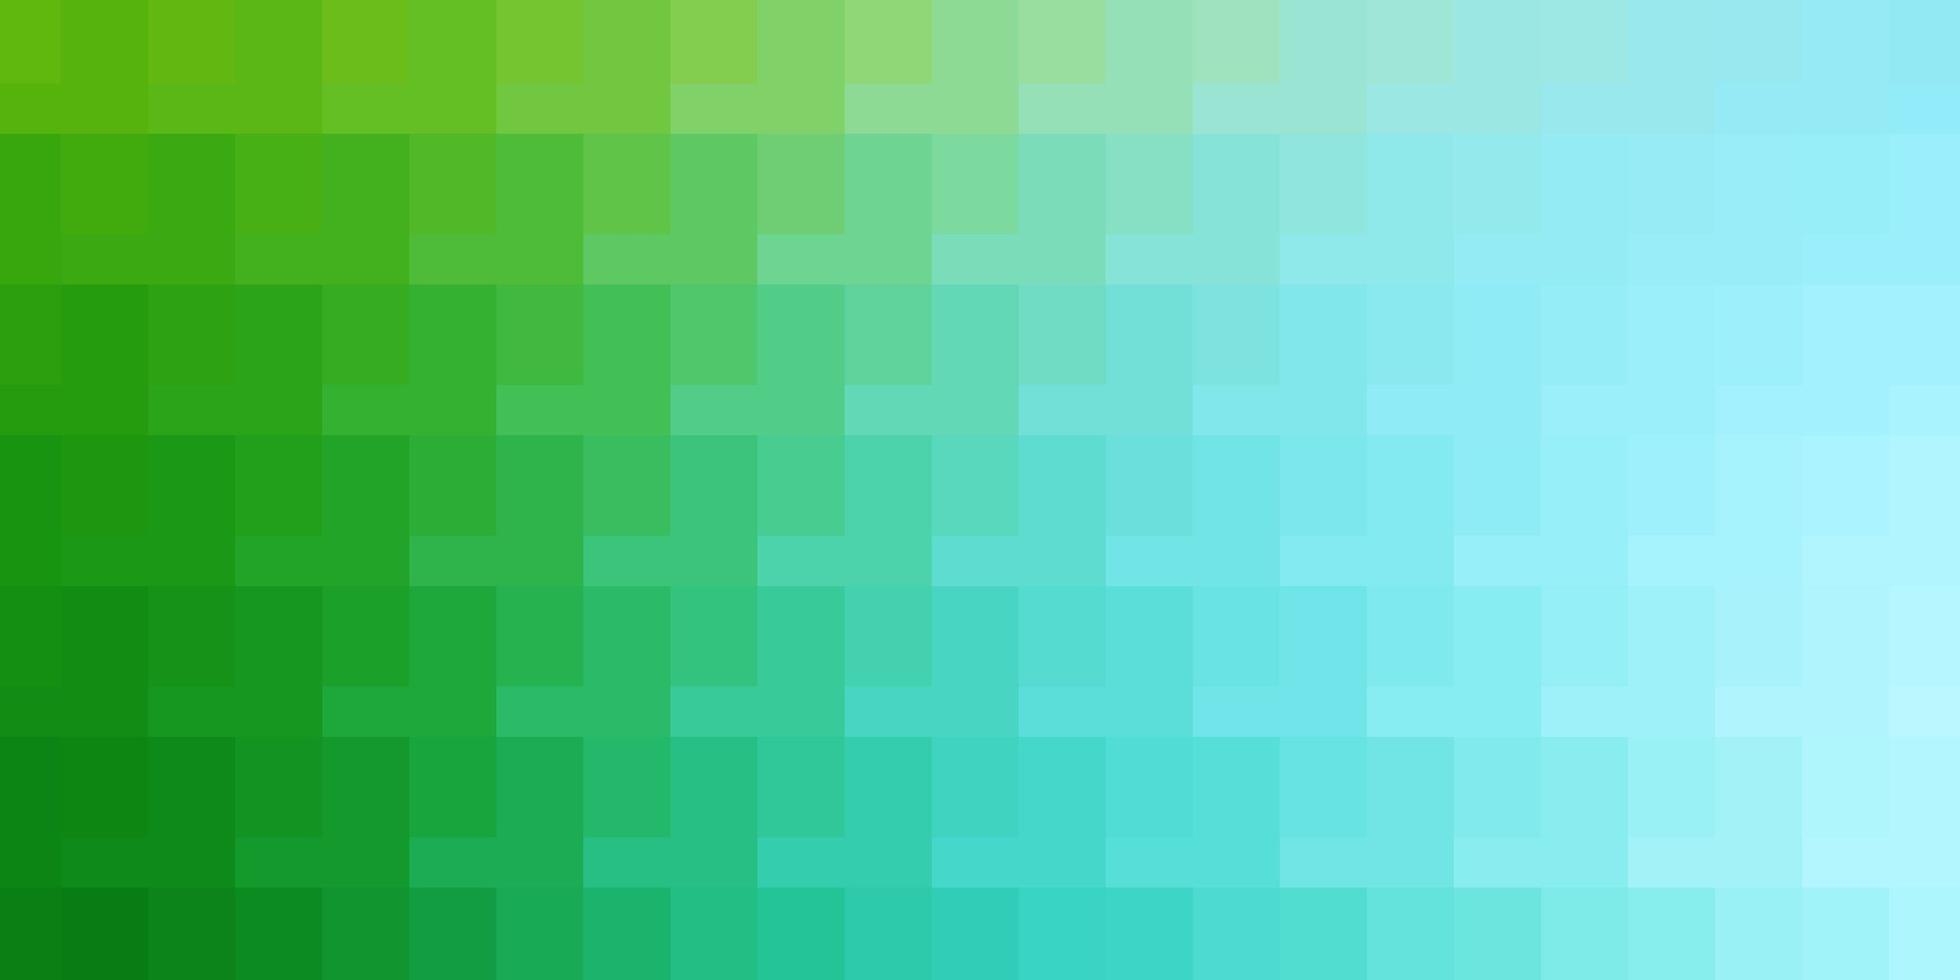 layout de vetor verde azul claro com linhas retângulos retângulos com gradiente colorido no padrão de fundo abstrato para folhetos de livretos de negócios